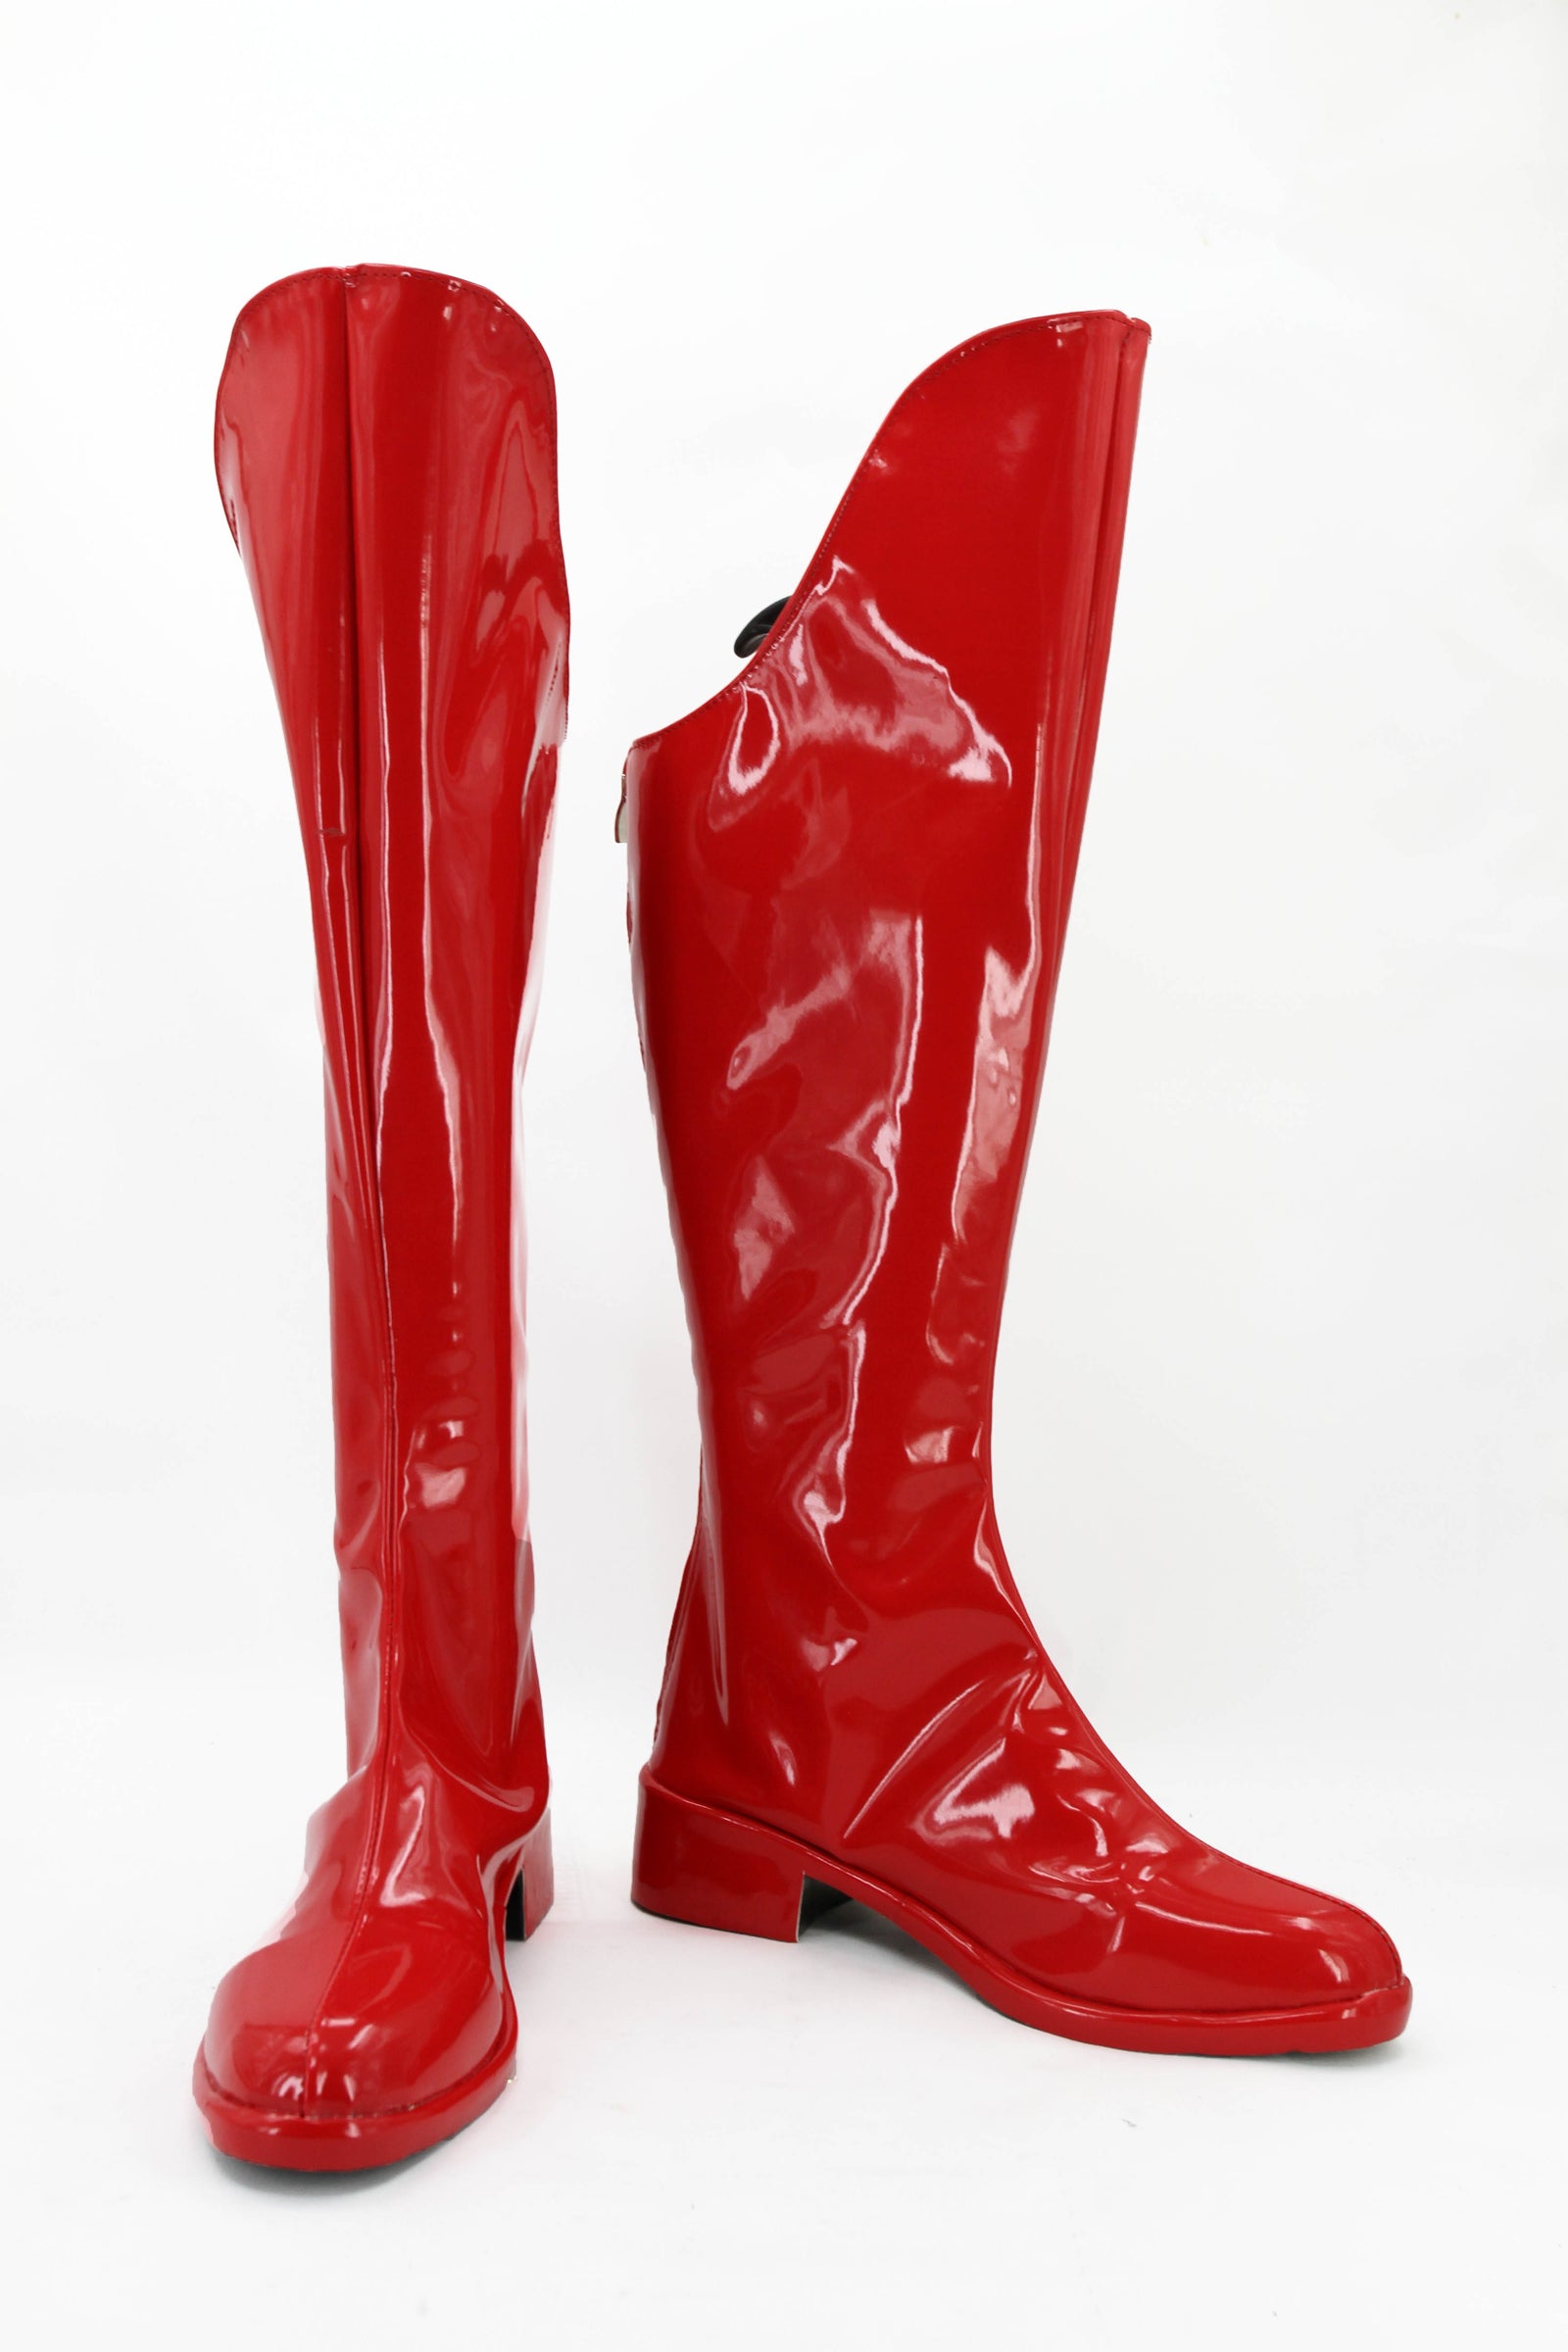 CBS TV Supergirl Kara Danvers Cosplay Prop Shoes Rain Boots Jackboots